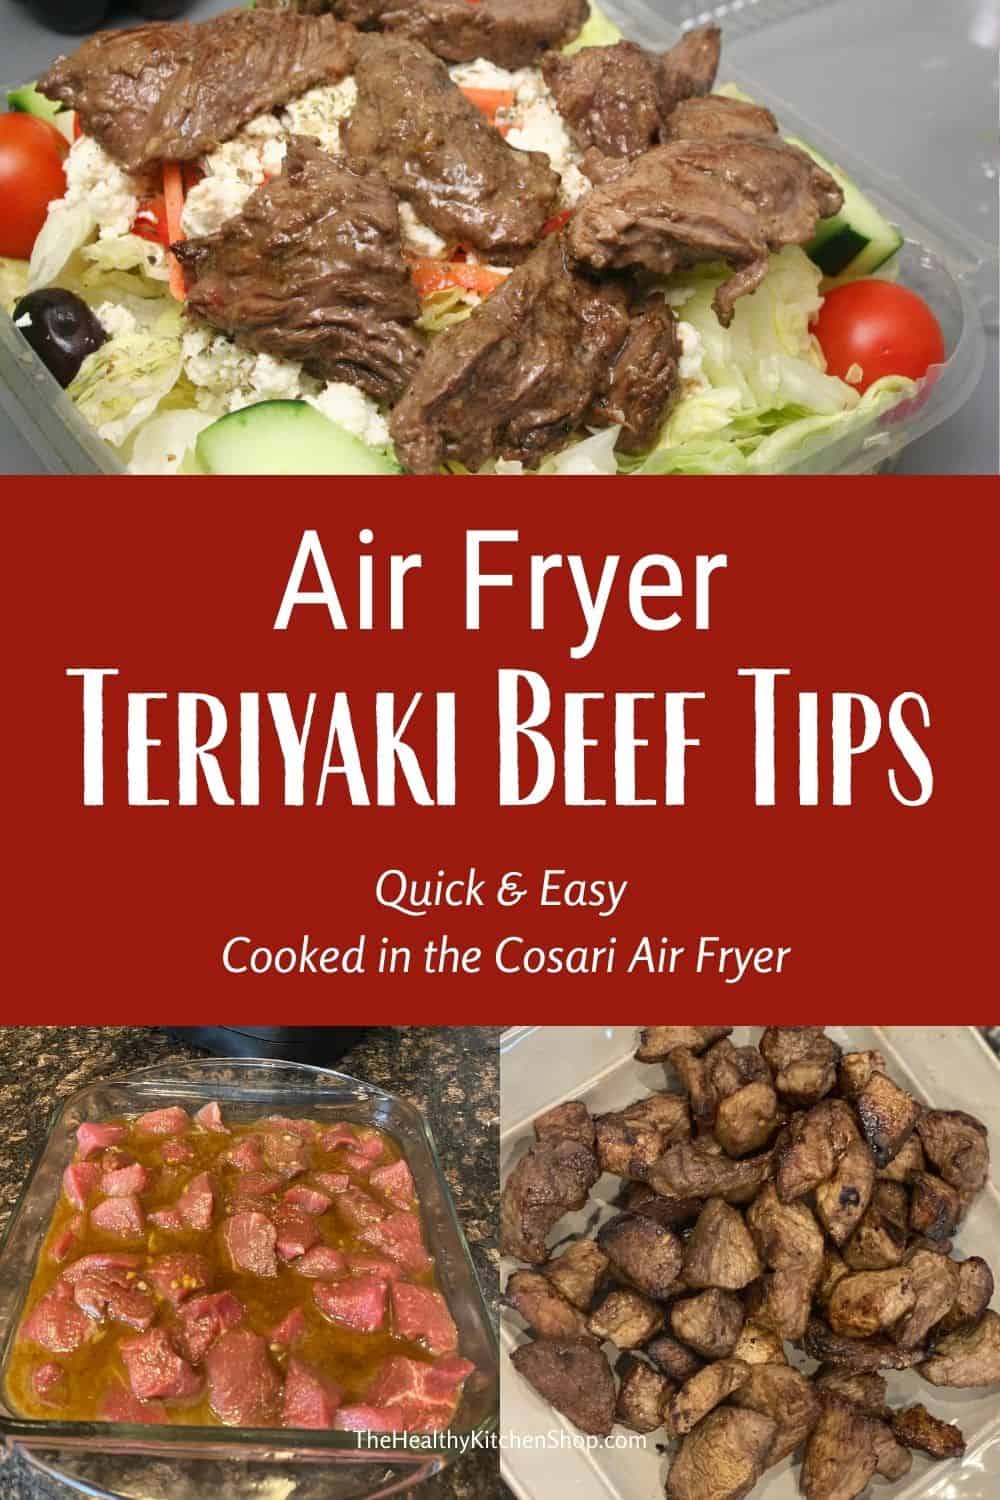 Air Fryer Teriyaki Beef Tips Recipe